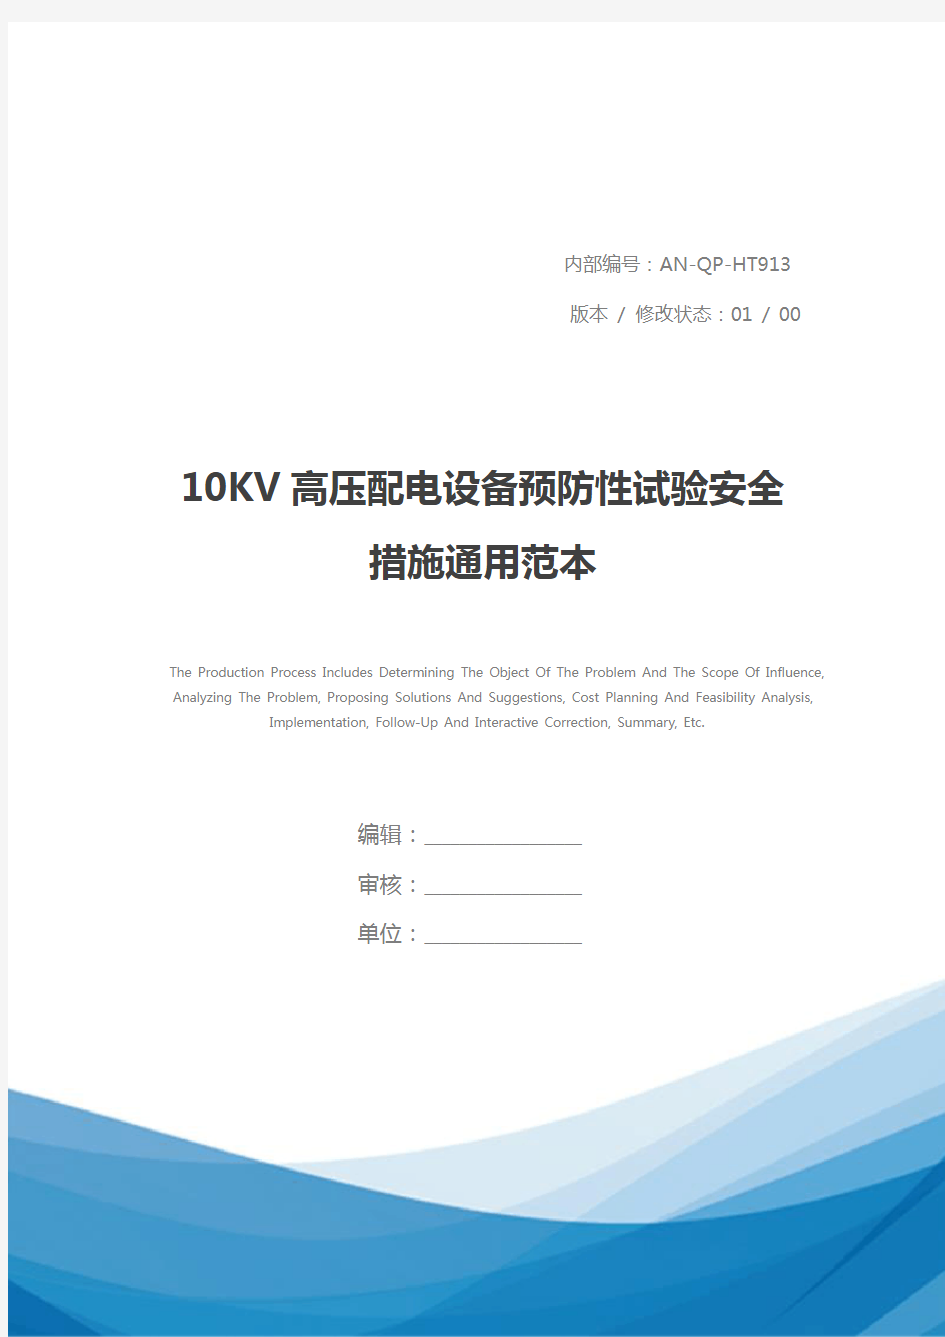 10KV高压配电设备预防性试验安全措施通用范本